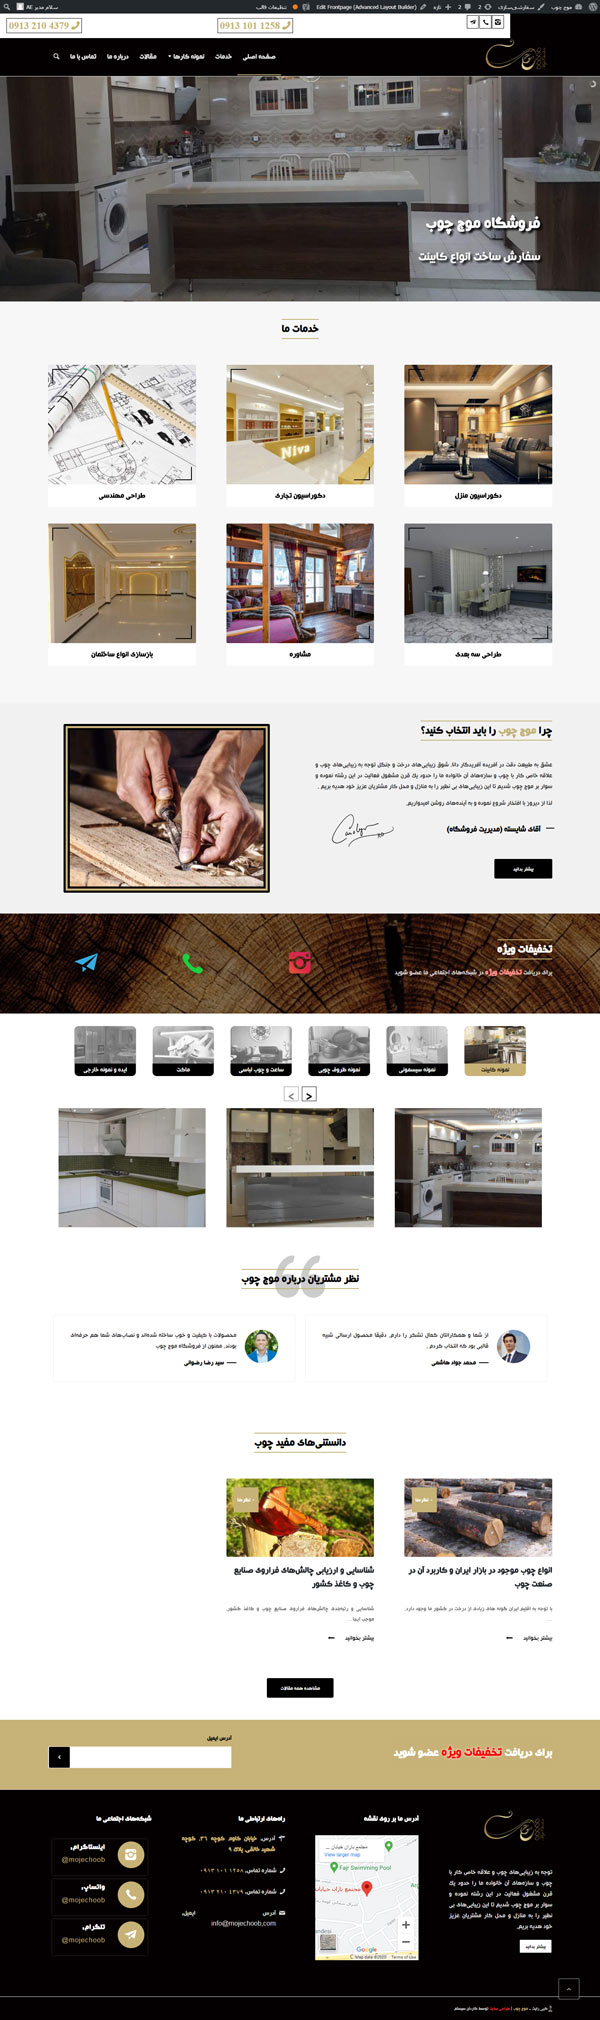 طراحی سایت موج چوب | خدمات دکوراسیون و محصولات چوبی